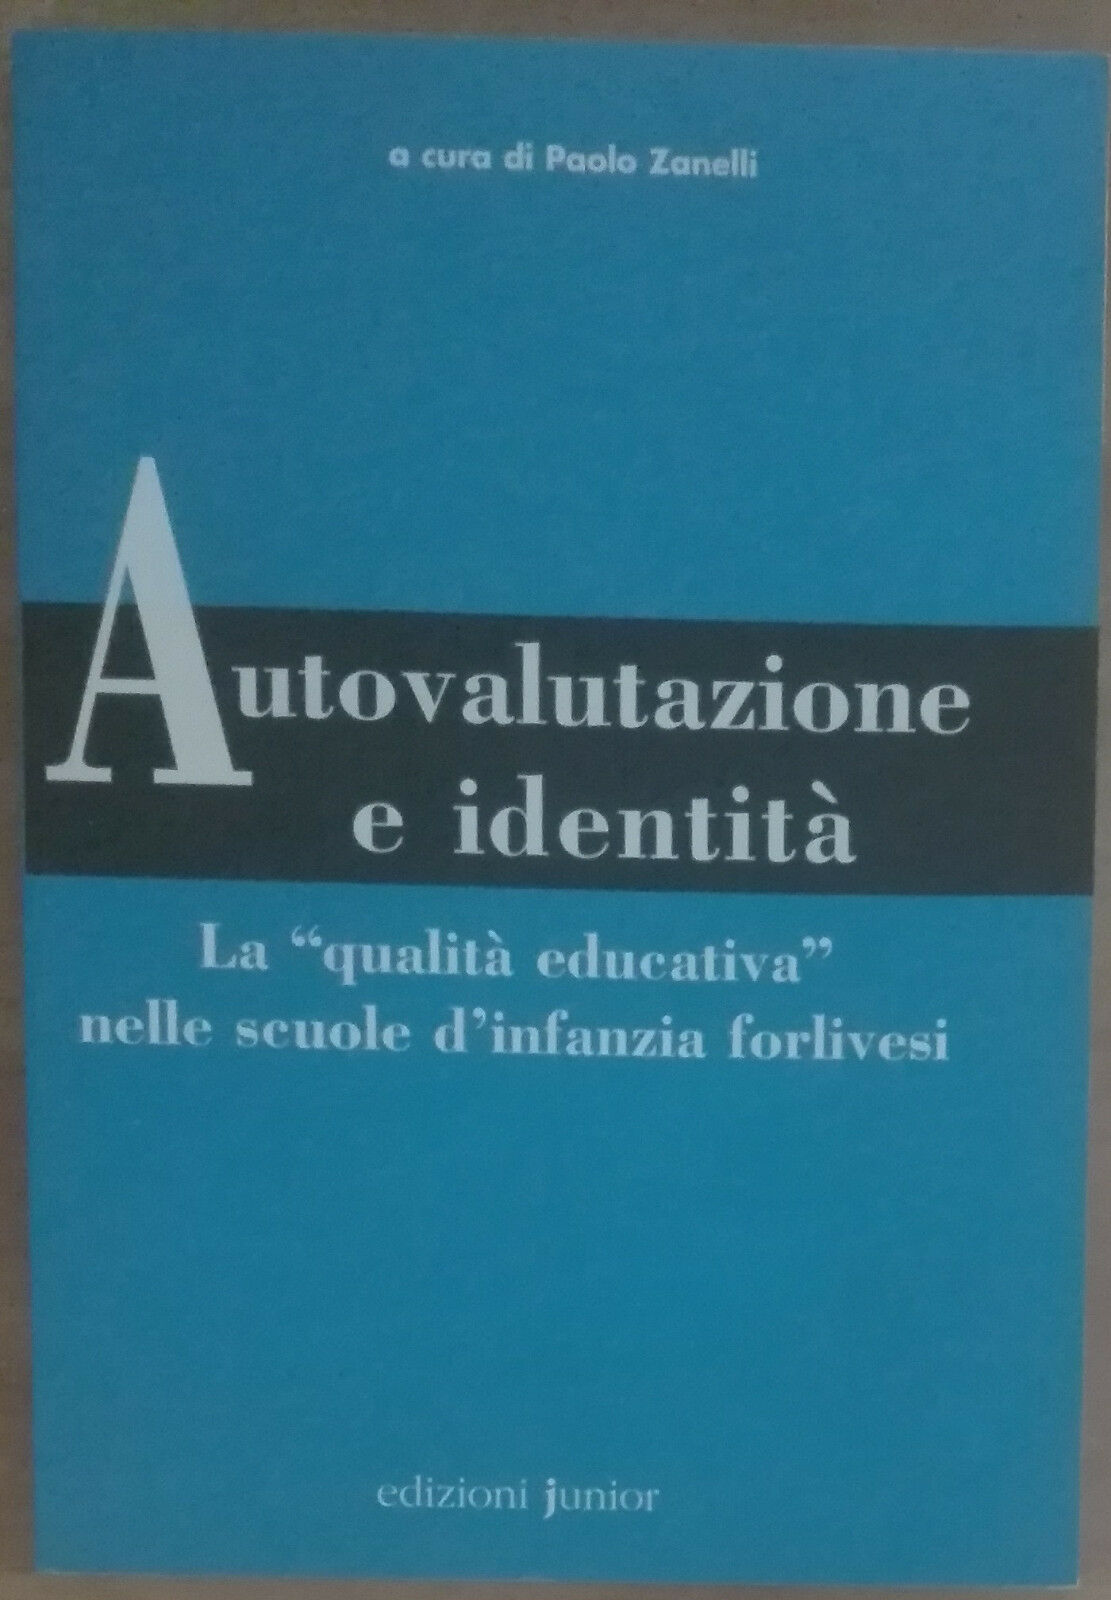 Autovalutazione e identit? - Paolo Zanelli - Edizioni Junior,200 - A